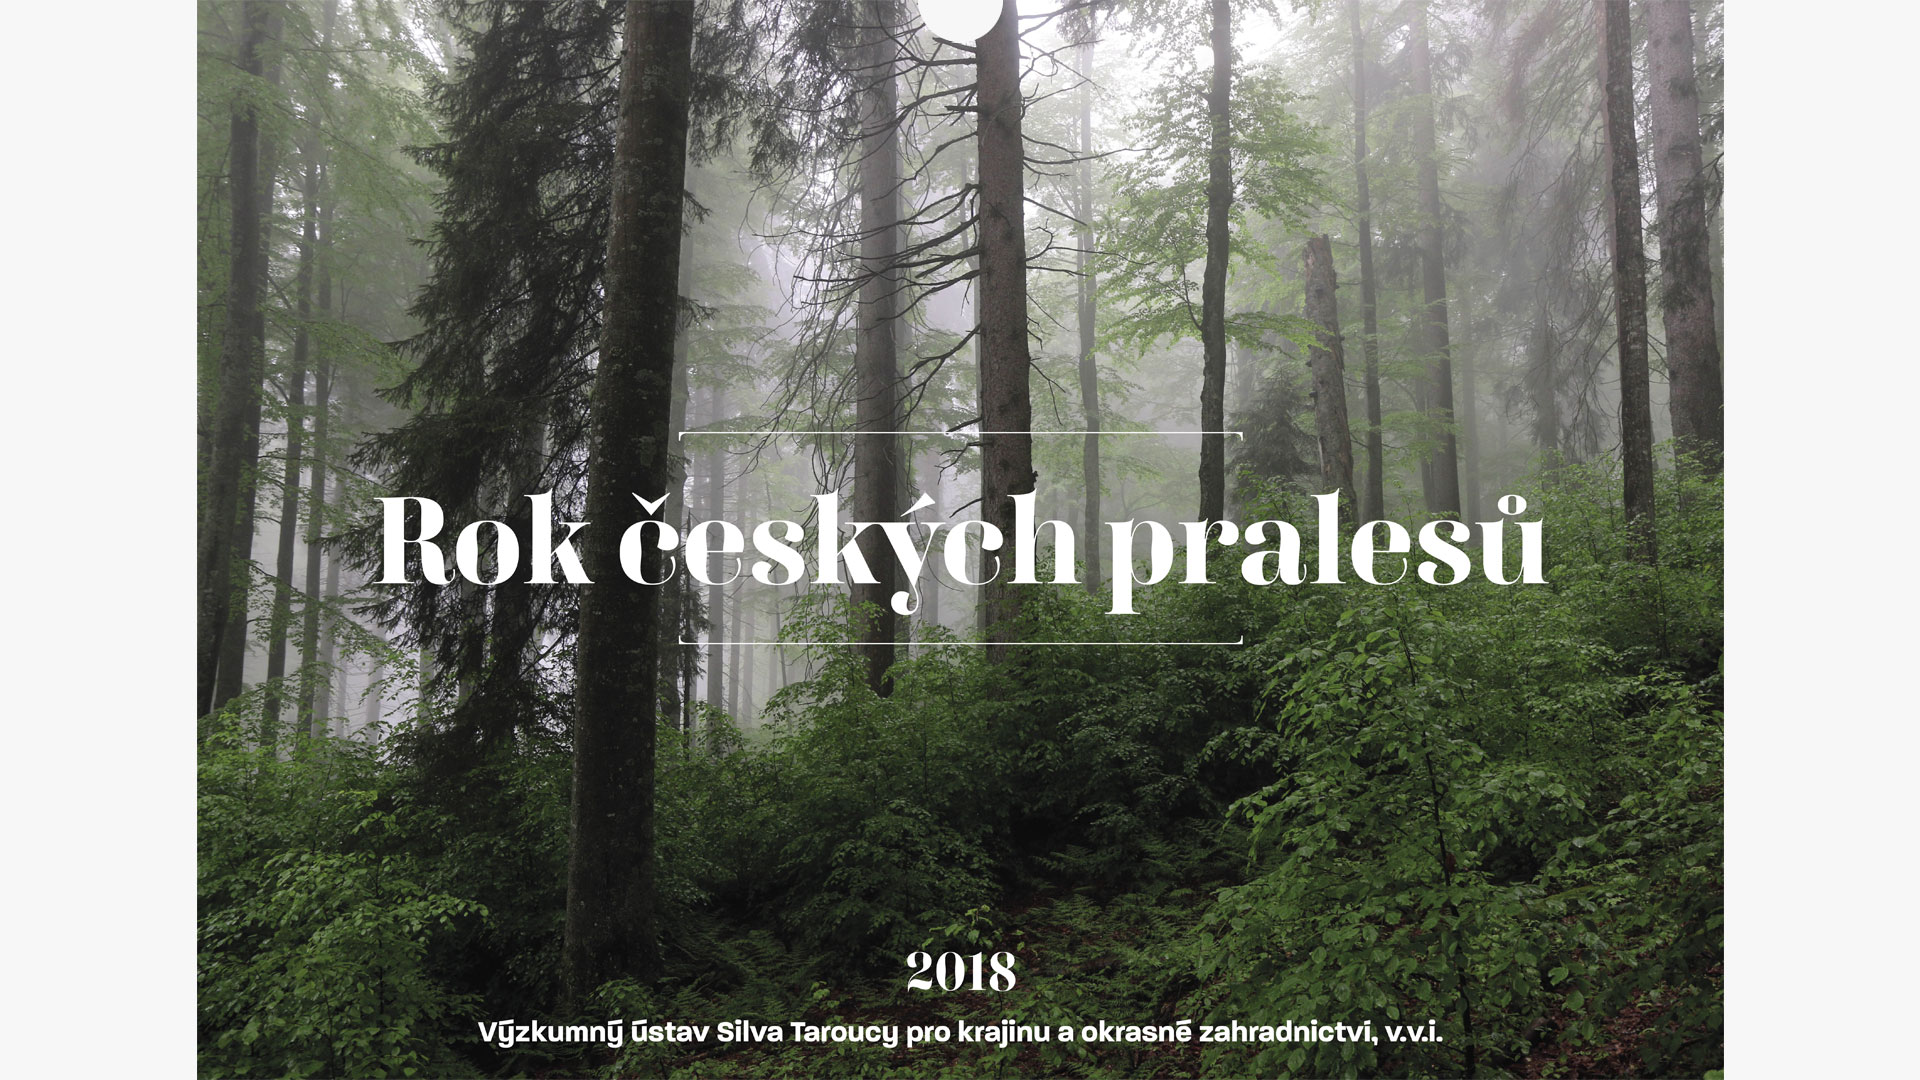 Kalendář pralesů ČR - realizace, Logo&Tisk